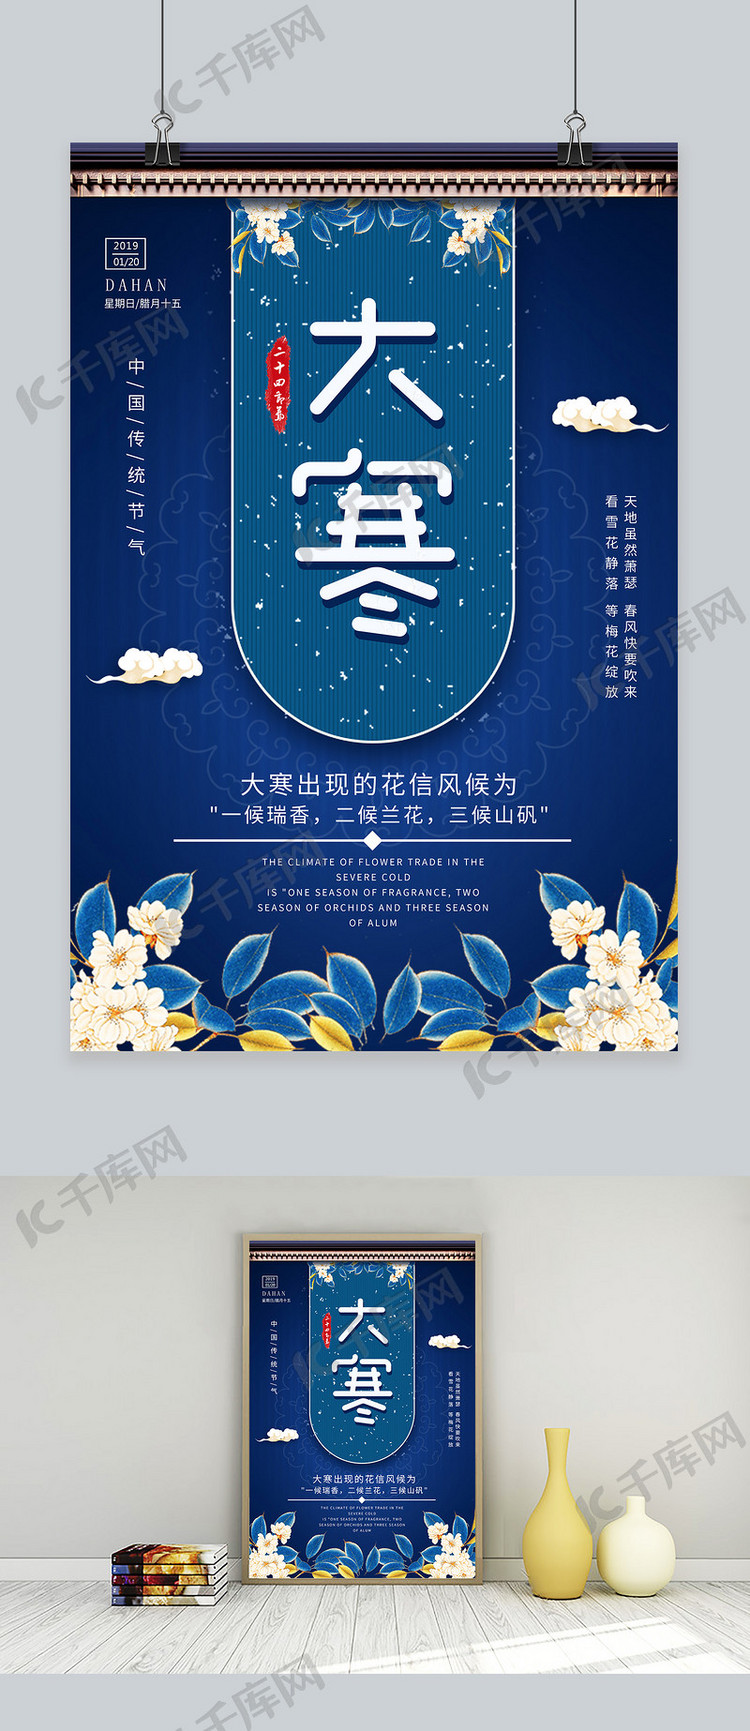 大寒二十四节气新式中国风蓝色复古海报